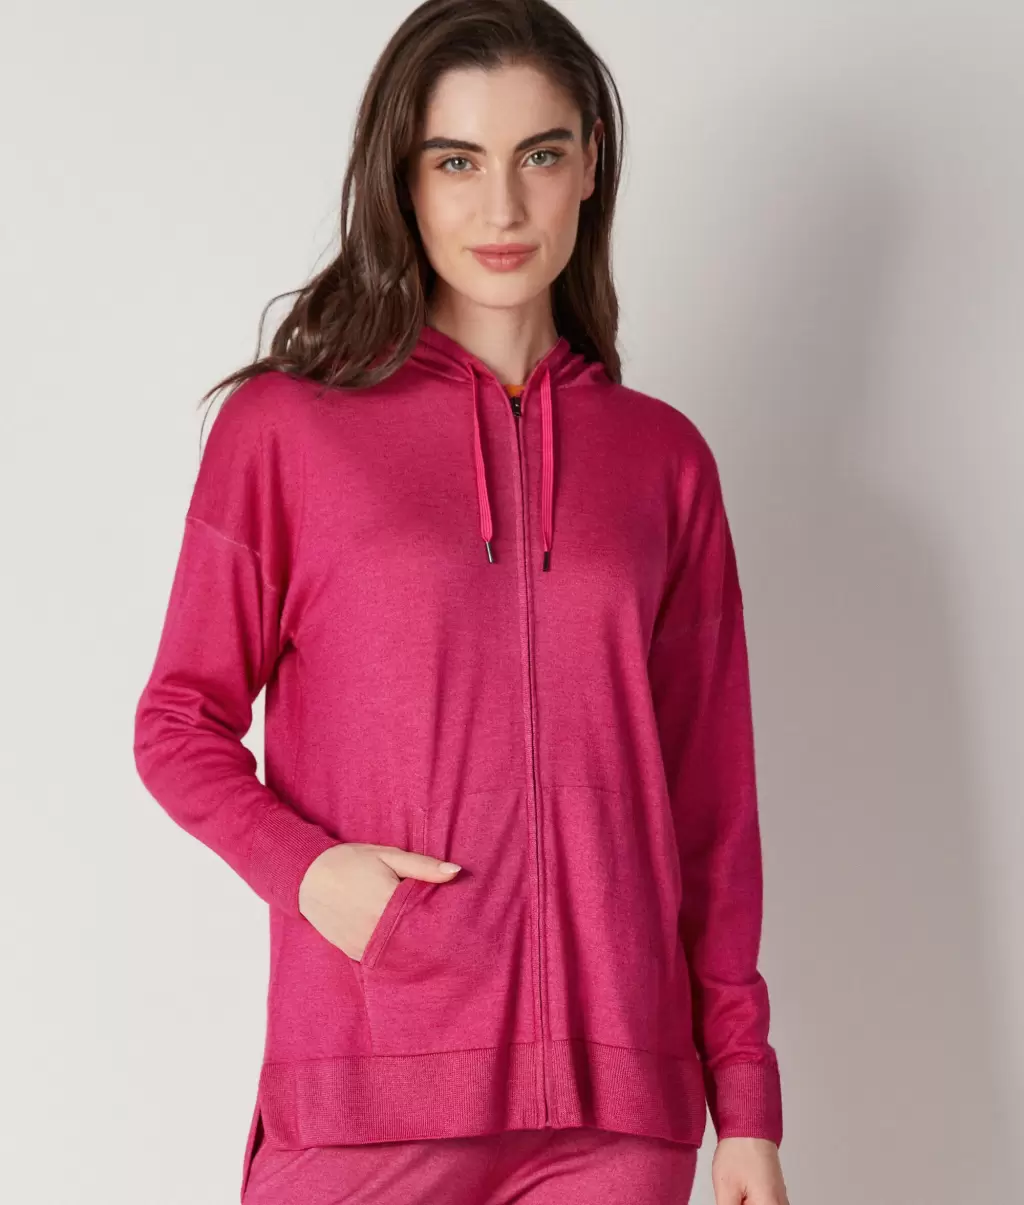 Falconeri Camisolas Felpa Pink Senhora Sweatshirt Com Fecho De Correr Em Ultrafine Cashmere - 1